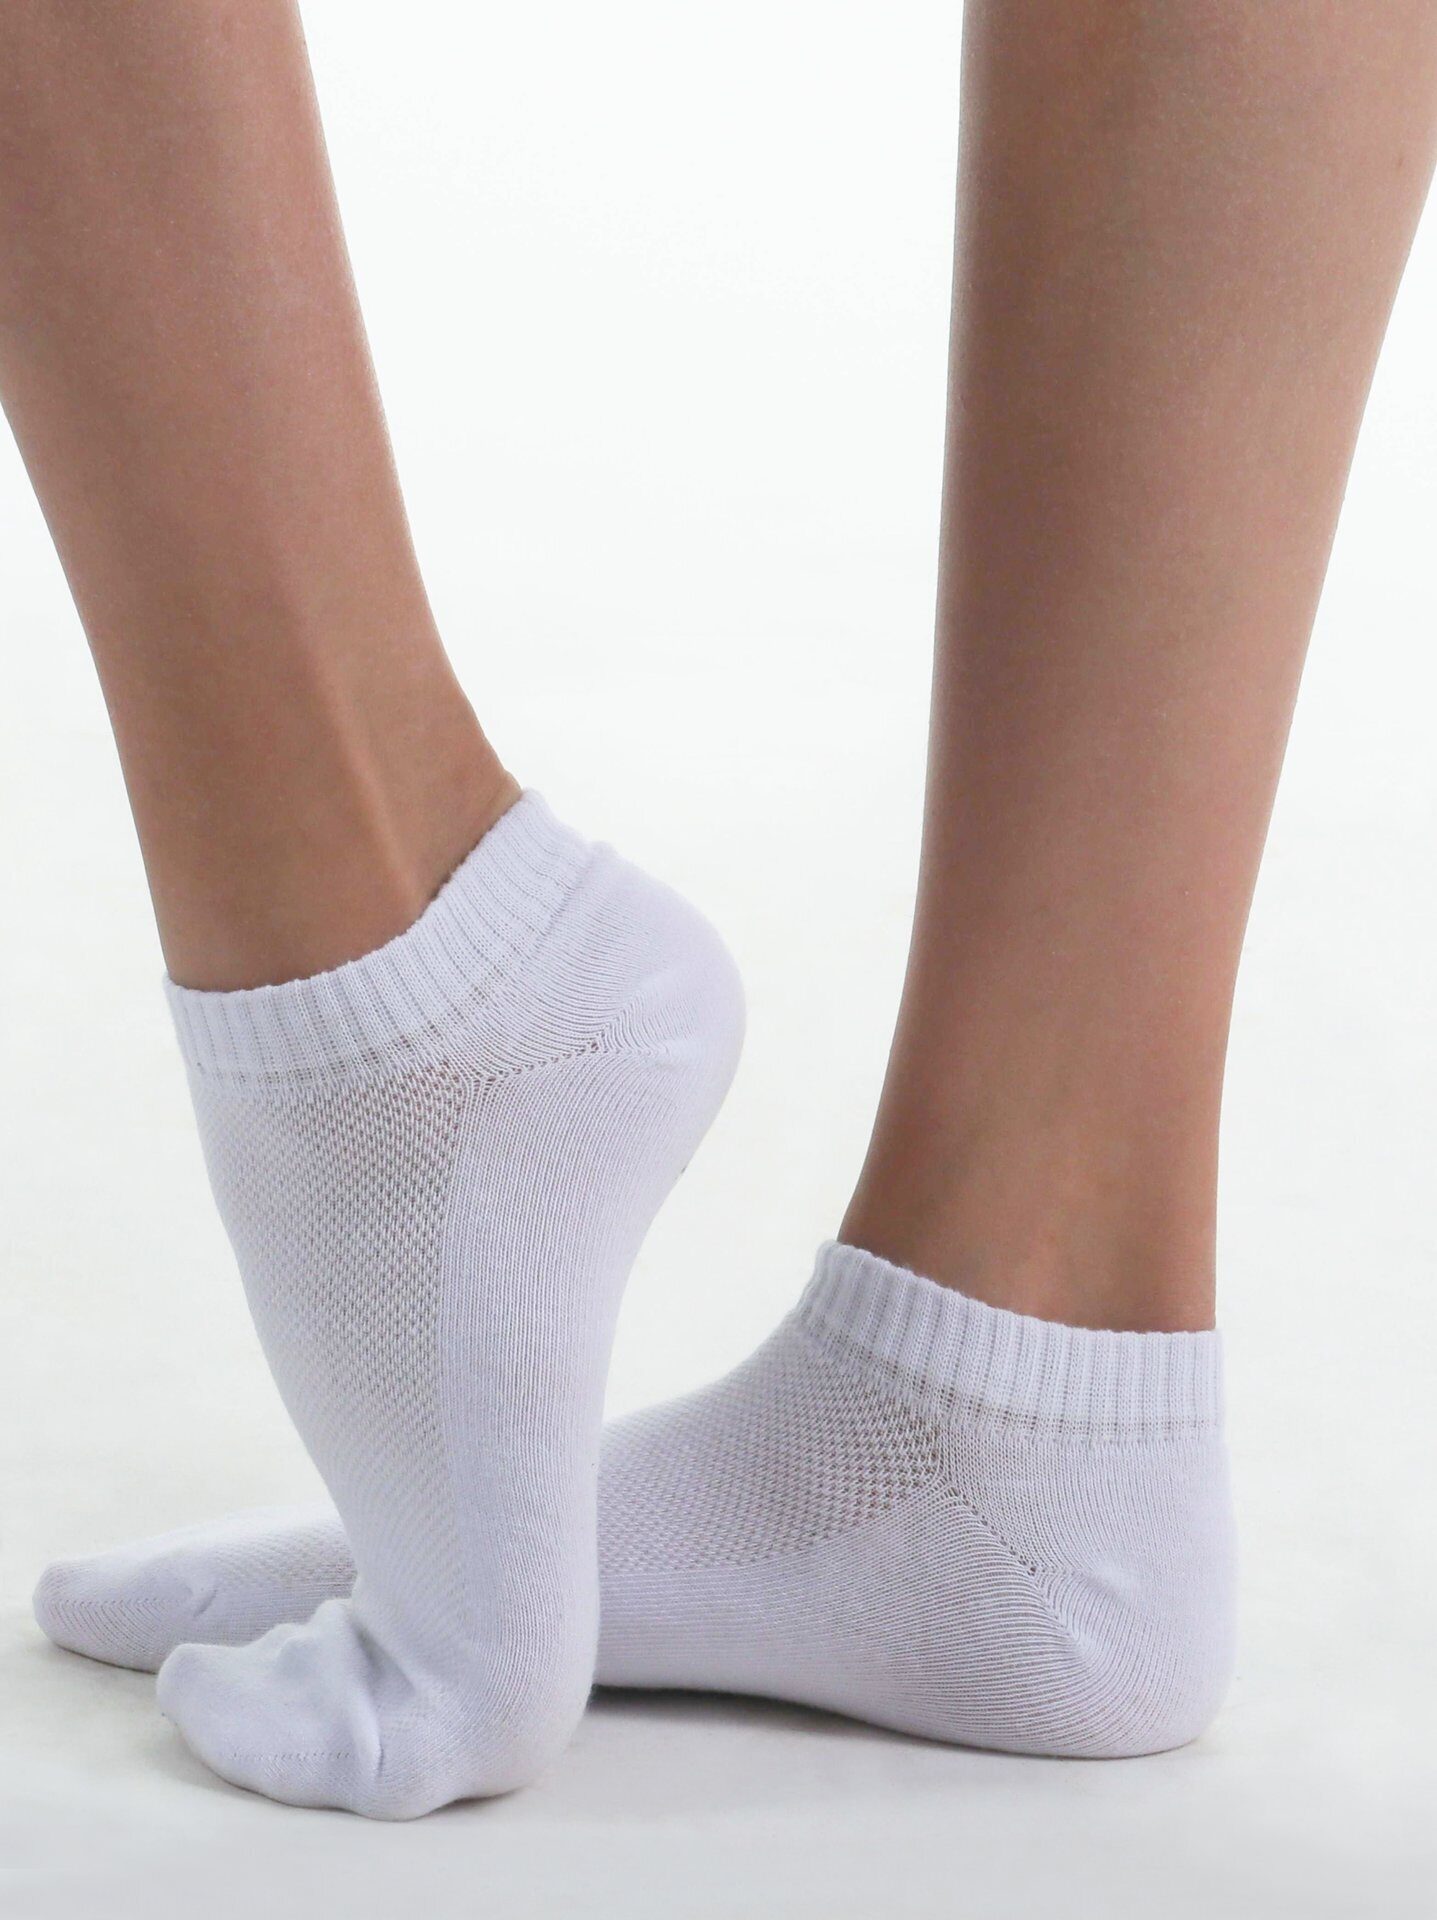 Низкие носочки. Носки solo спортивные низкие, арт.ns11. Белые носки. Носки белые короткие. Носки укороченные.